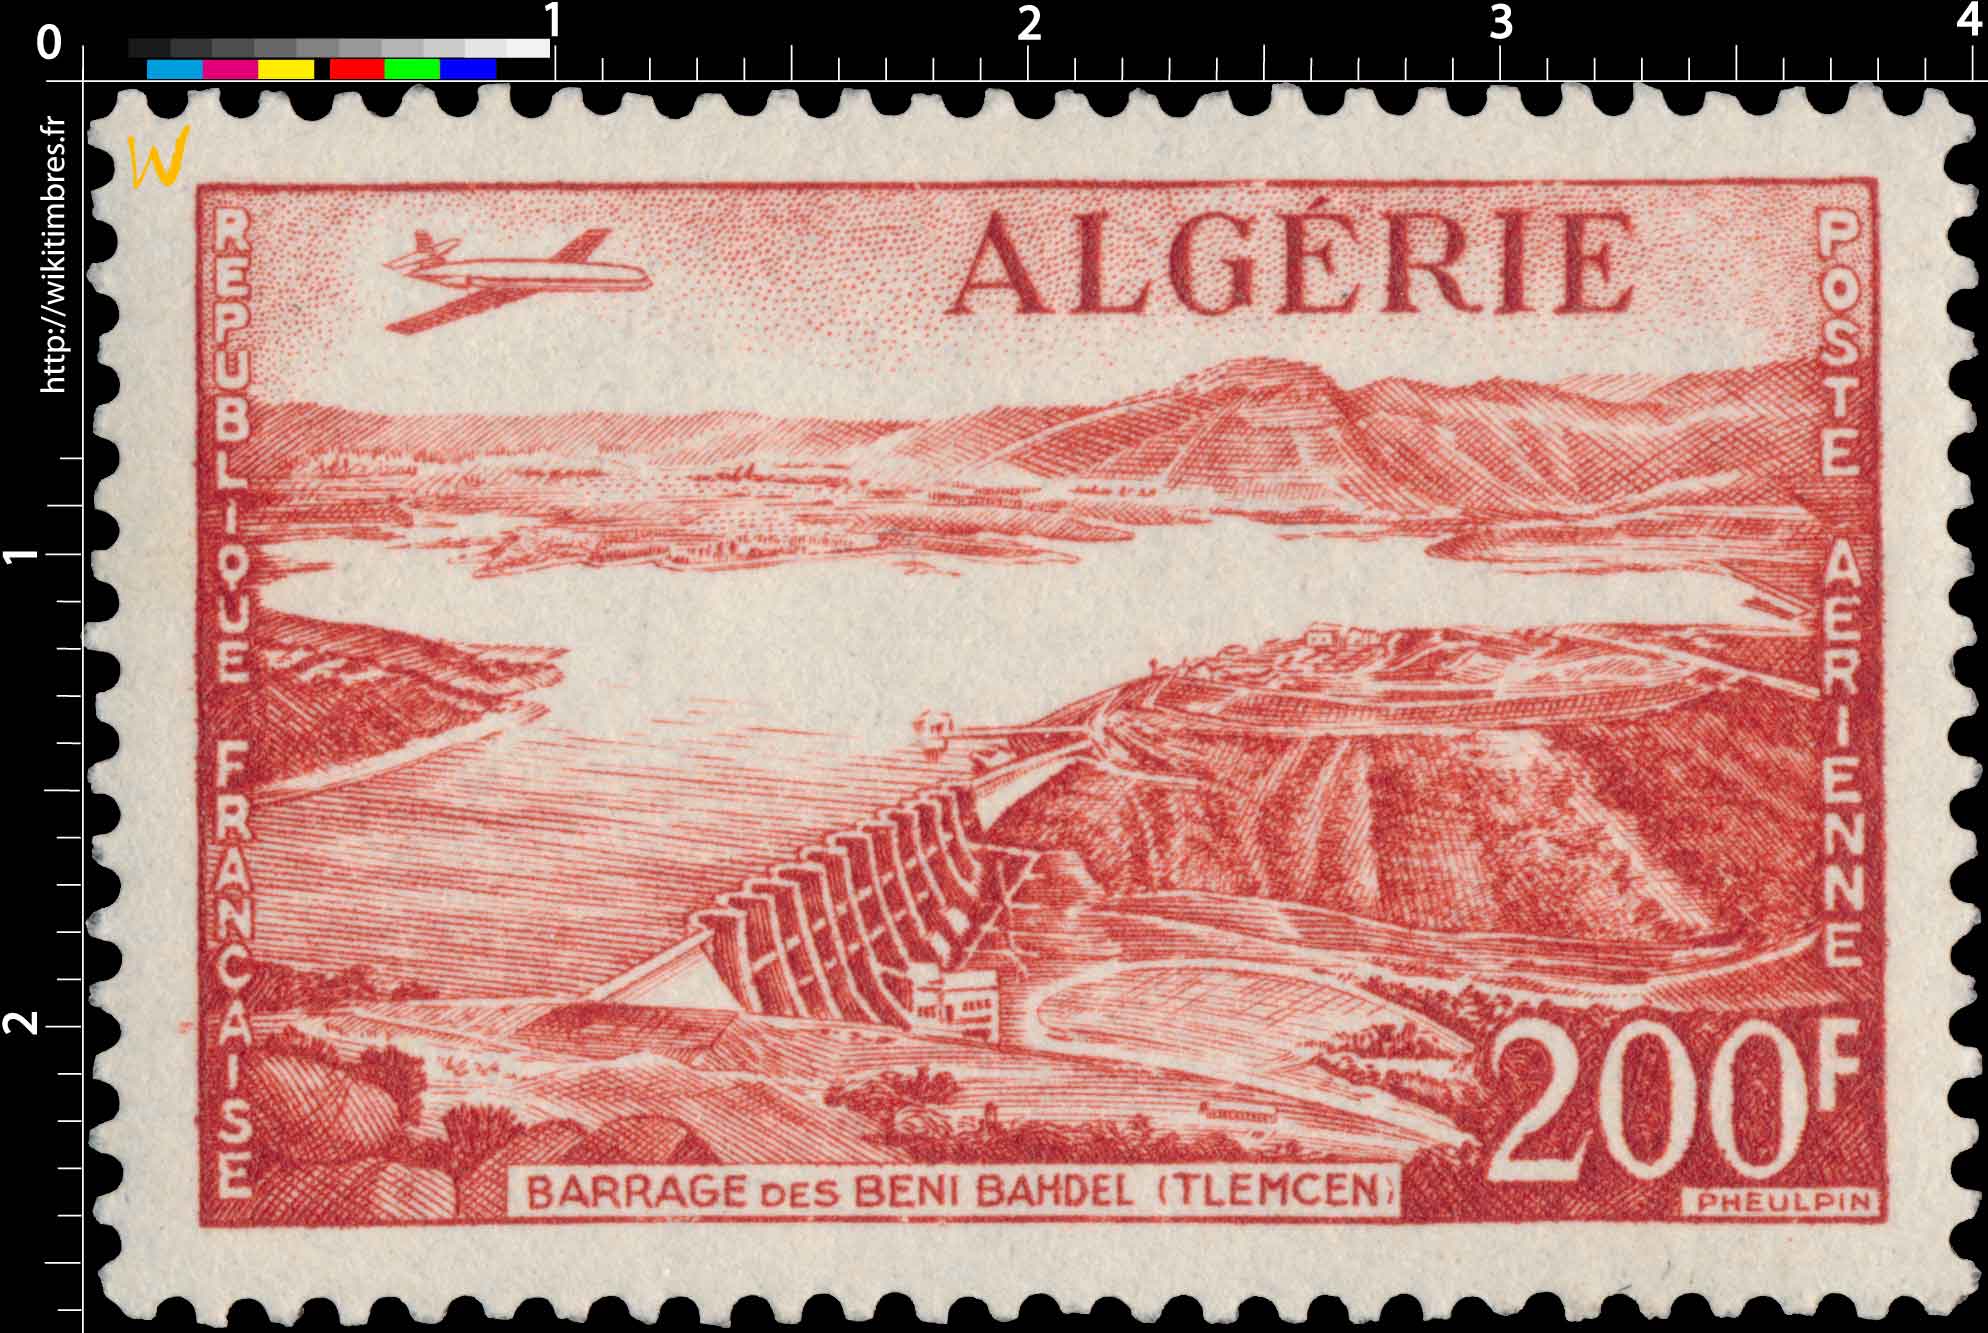 Algérie - Barrage des Beni-Bahdel (Tlemcen)